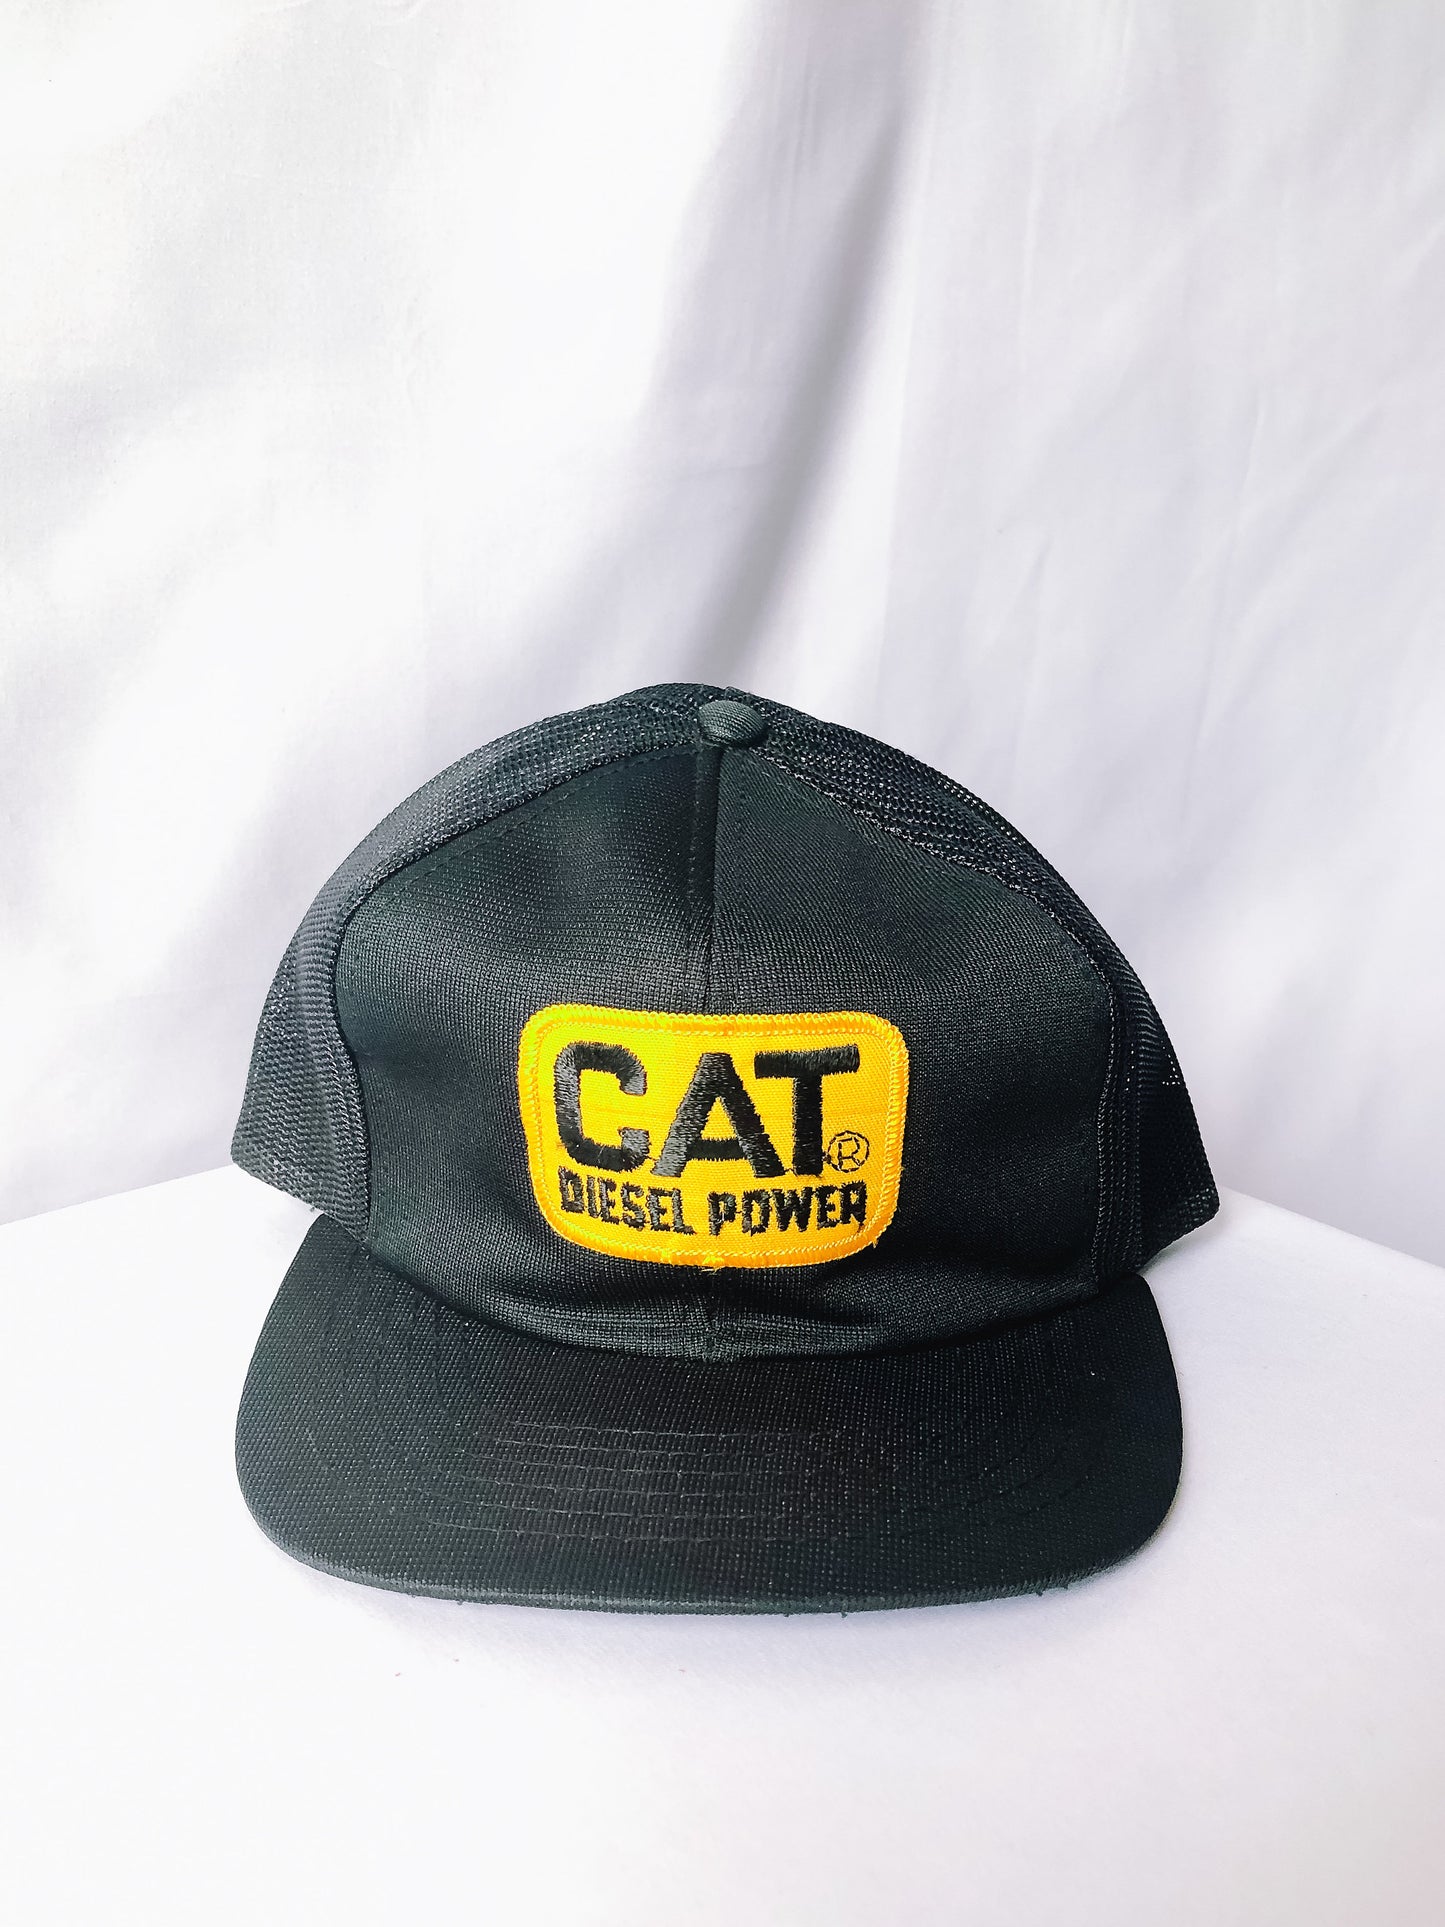 Vintage CAT Diesel Power Black Mesh Trucker Hat, Flat Brim Snapback Cap